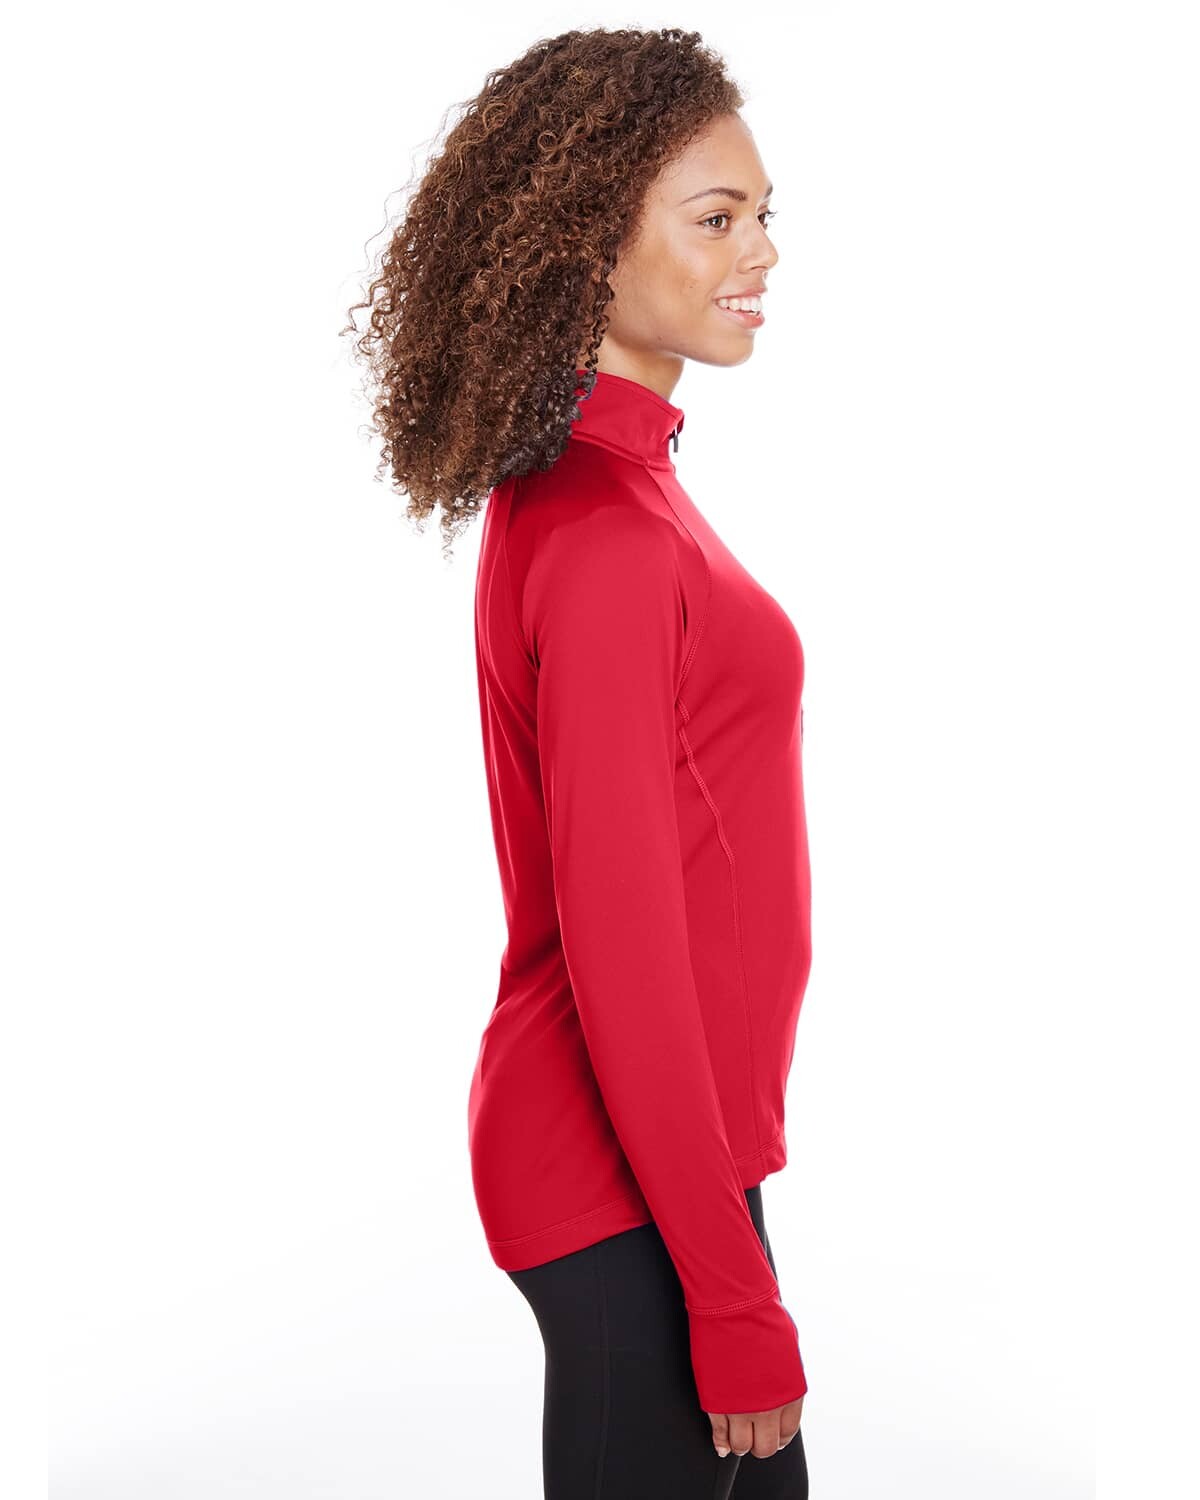 Spyder Ladies' Freestyle Half-Zip Pullover, Custom Half Zip Pullover